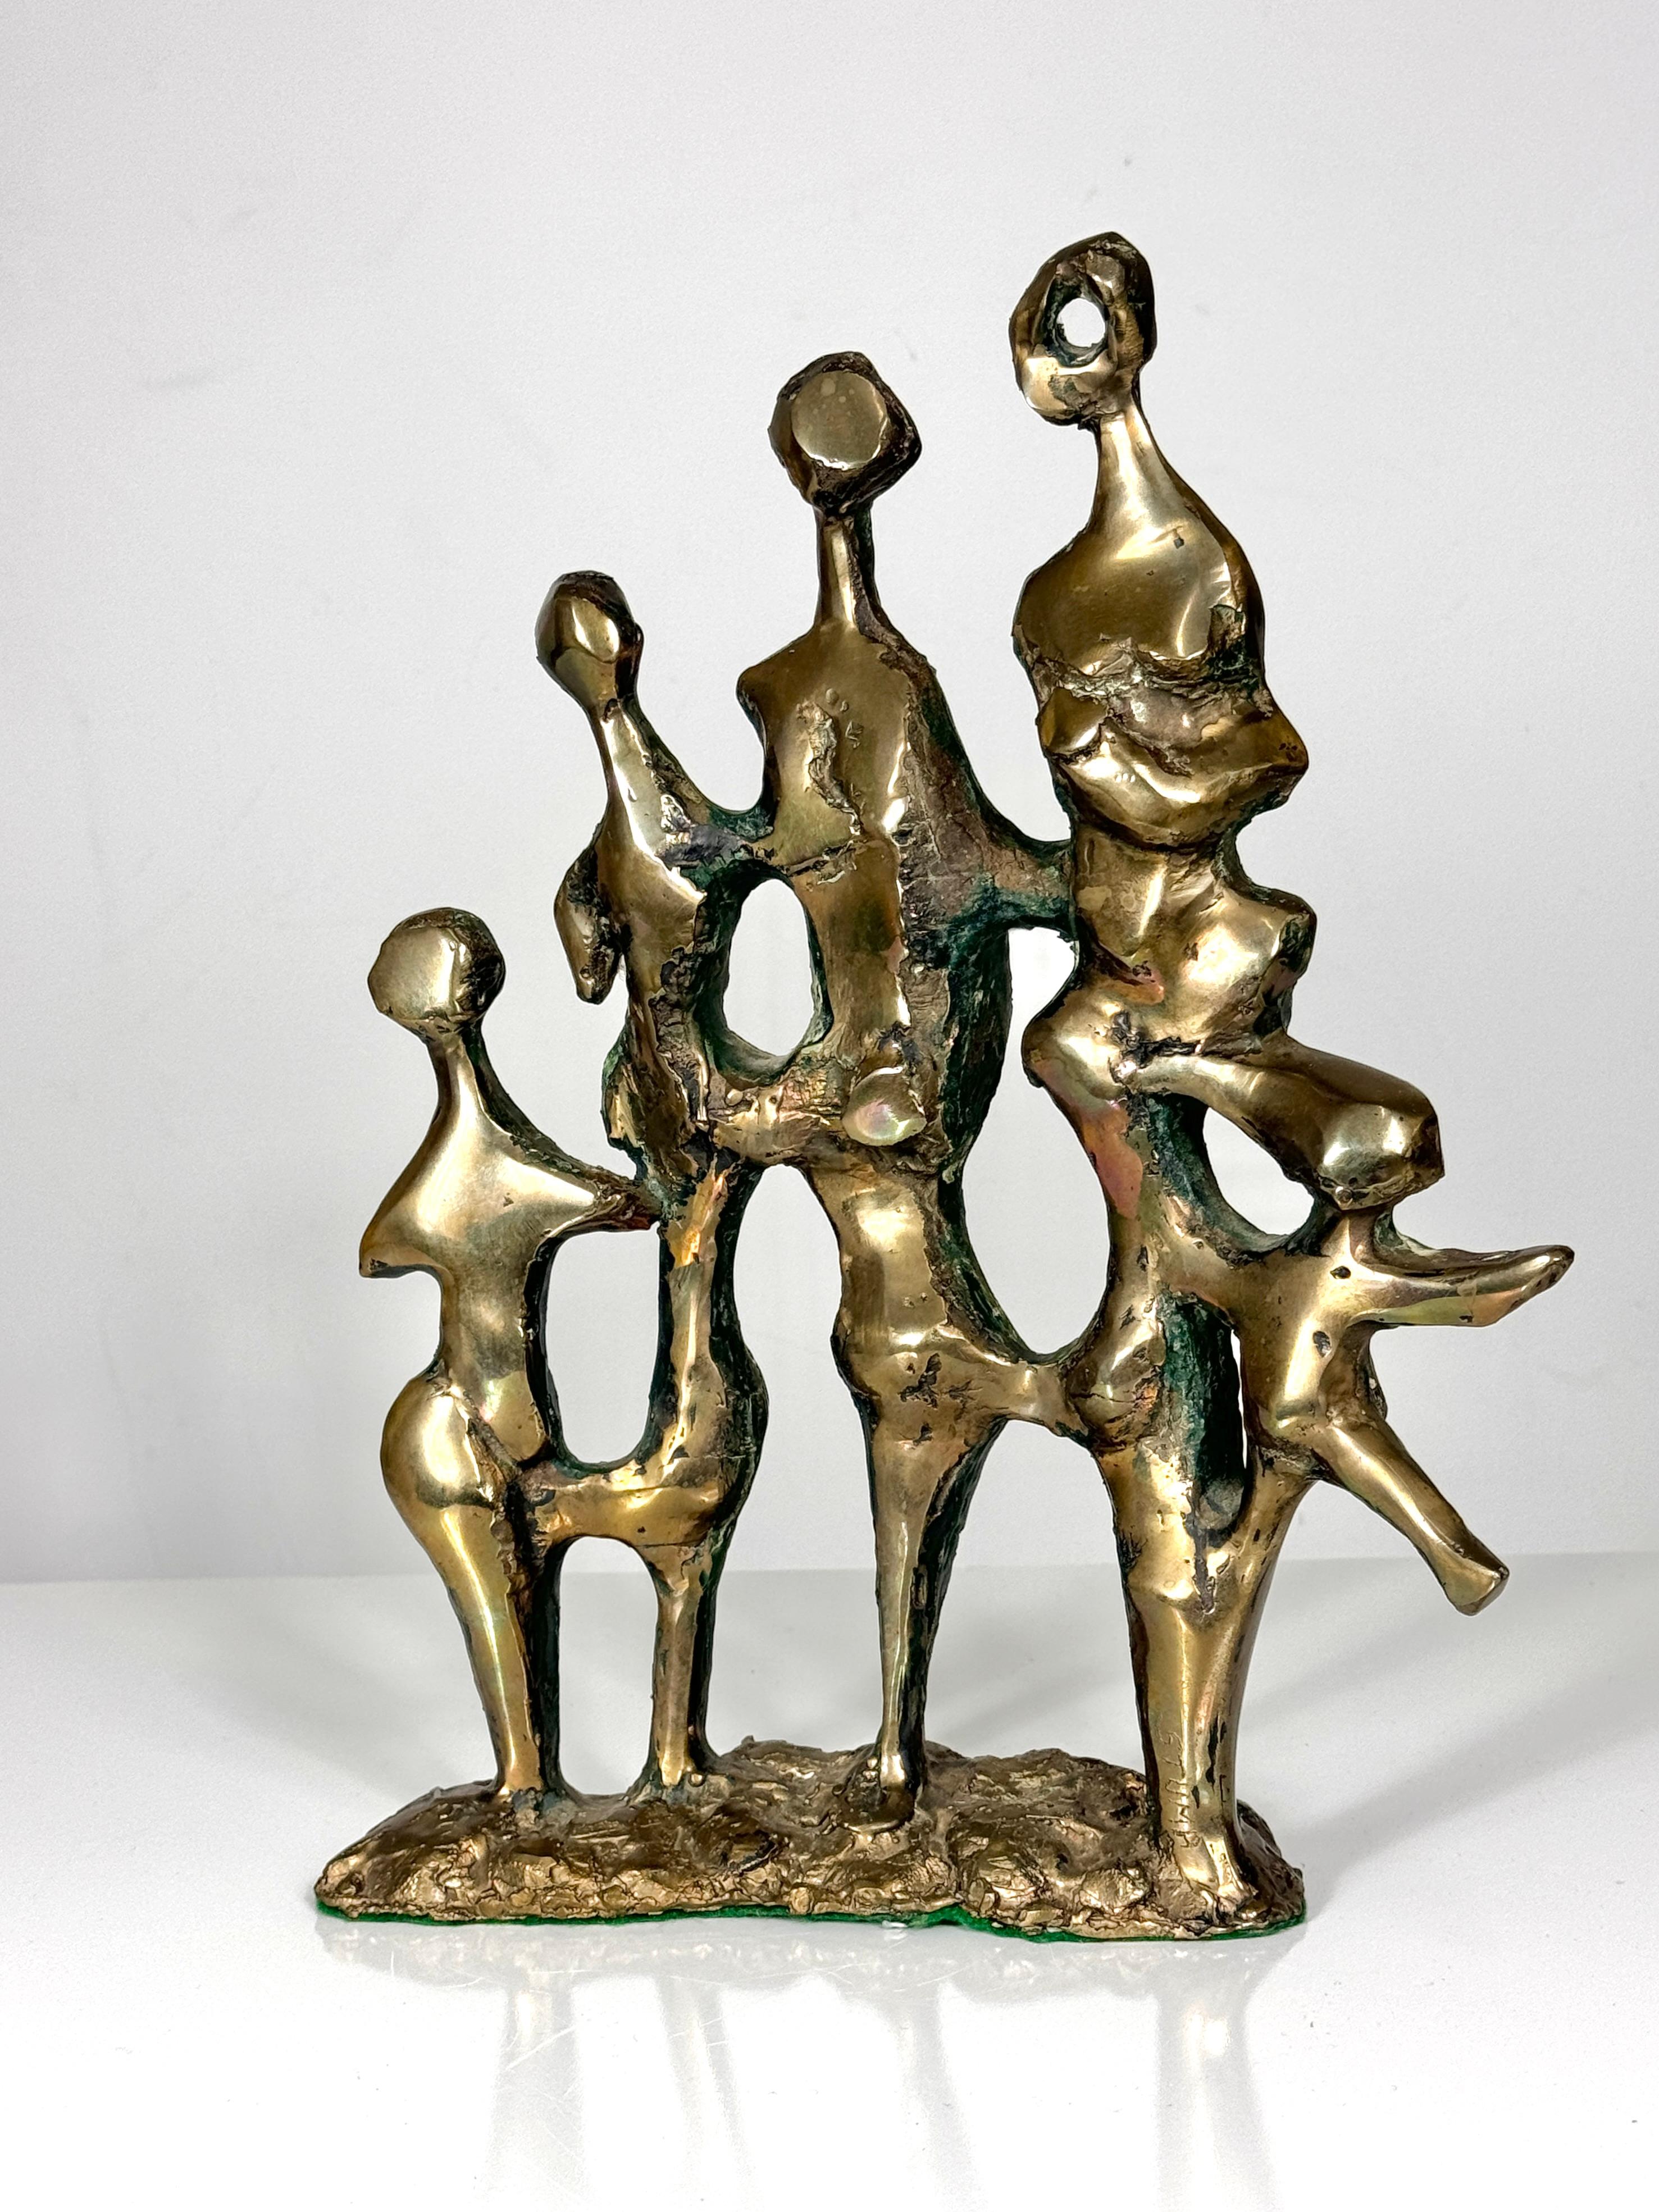 Sculpture abstraite en bronze de l'artiste du Michigan Pamela Stump Walshe c. 1960s
Famille de figures brutalistes exécutées en bronze massif avec une excellente patine d'usage
Signé en bas à droite

Largeur de 10,5 pouces
3 pouces de